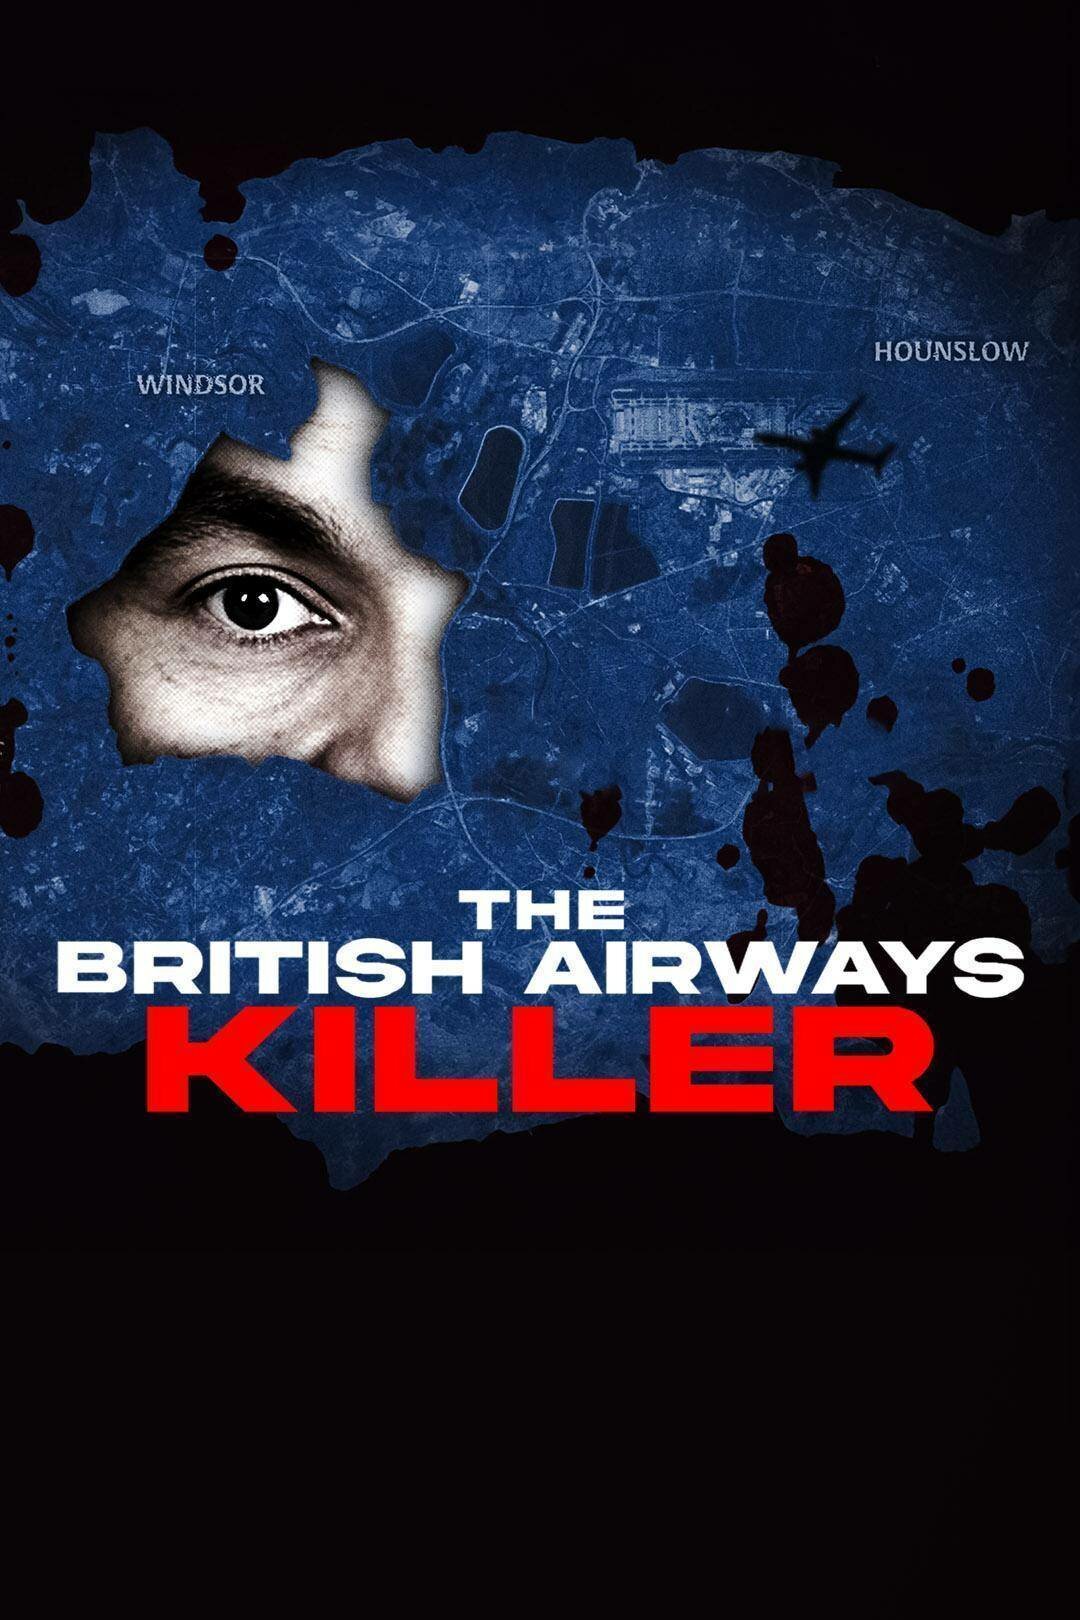 The British Airways Killer